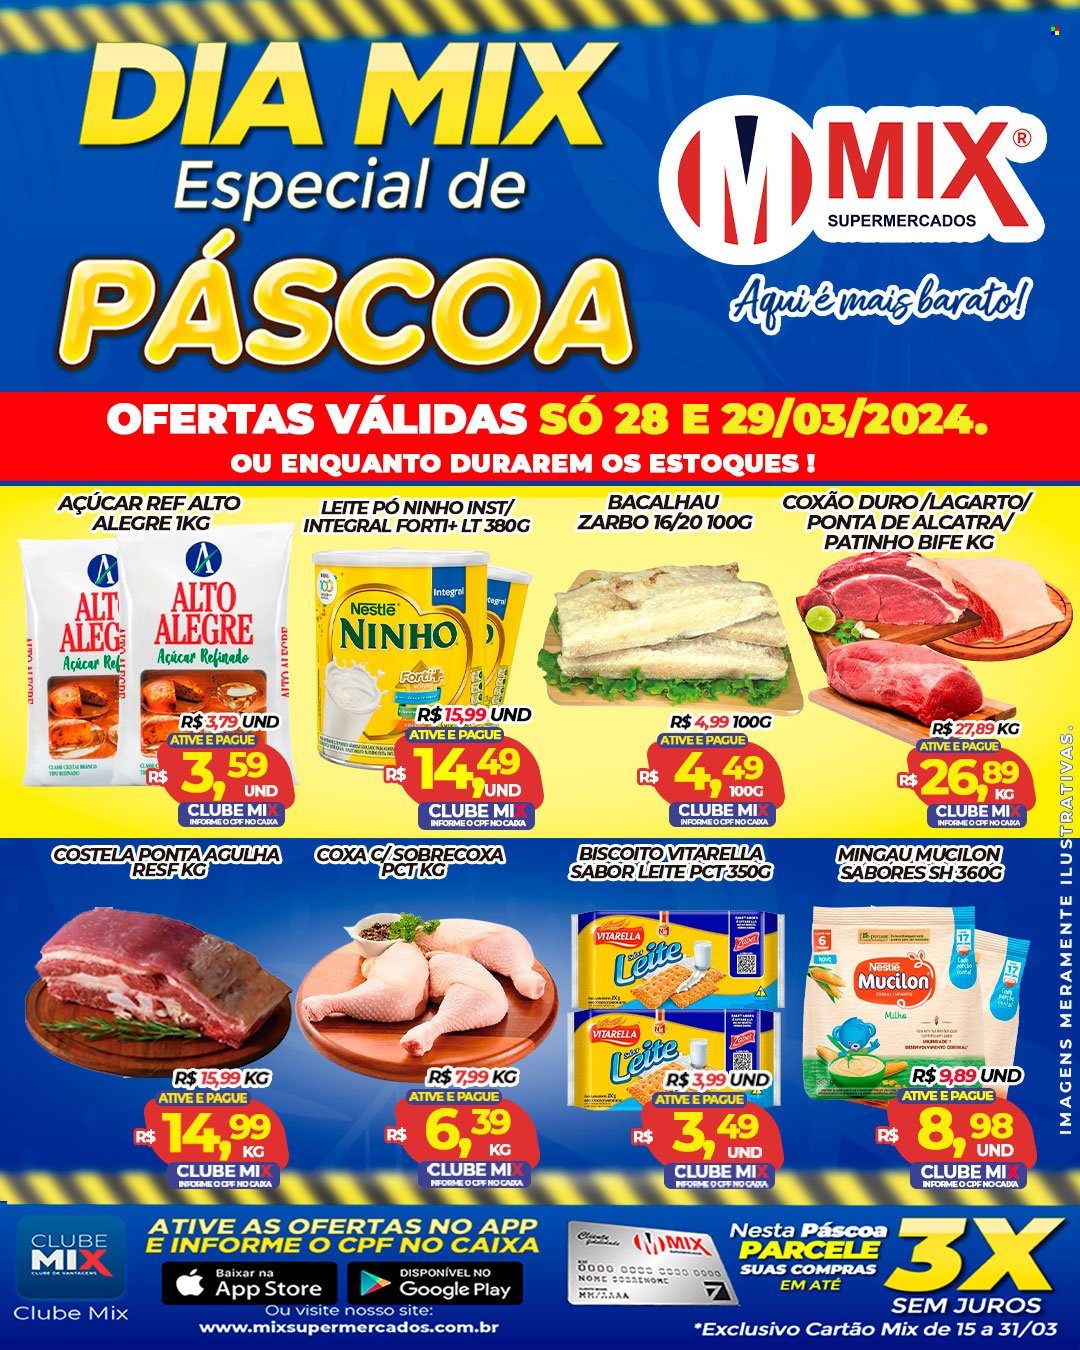 Encarte Mix Supermercados  - 28.03.2024 - 29.03.2024.